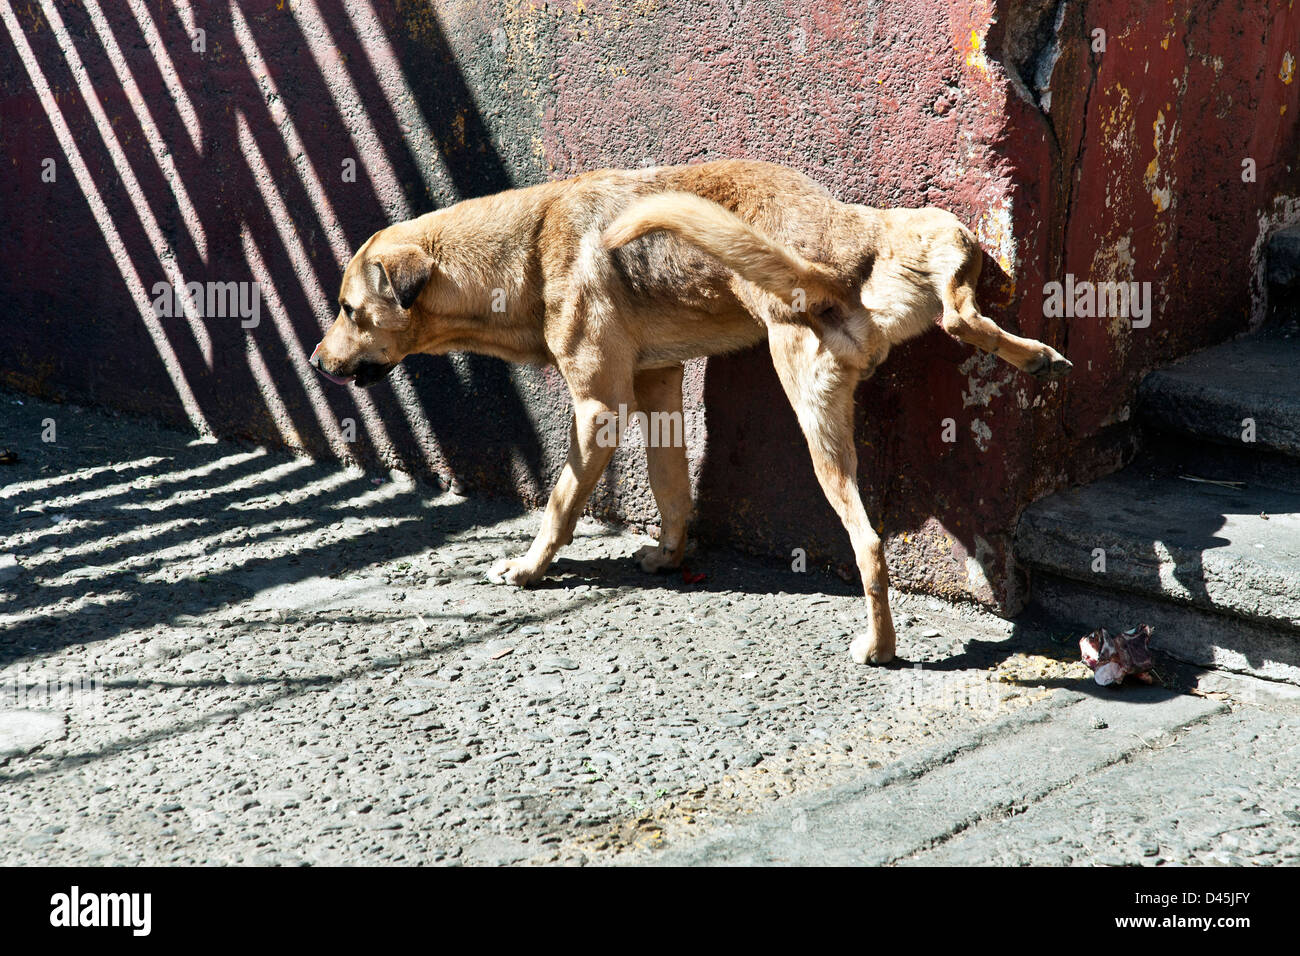 streunende jungen Hund mit braunen Fell ohne Kragen entlastet sich gegen alte rote Wand Ecke außerhalb La Merced Markt Oaxaca Mexico Stockfoto